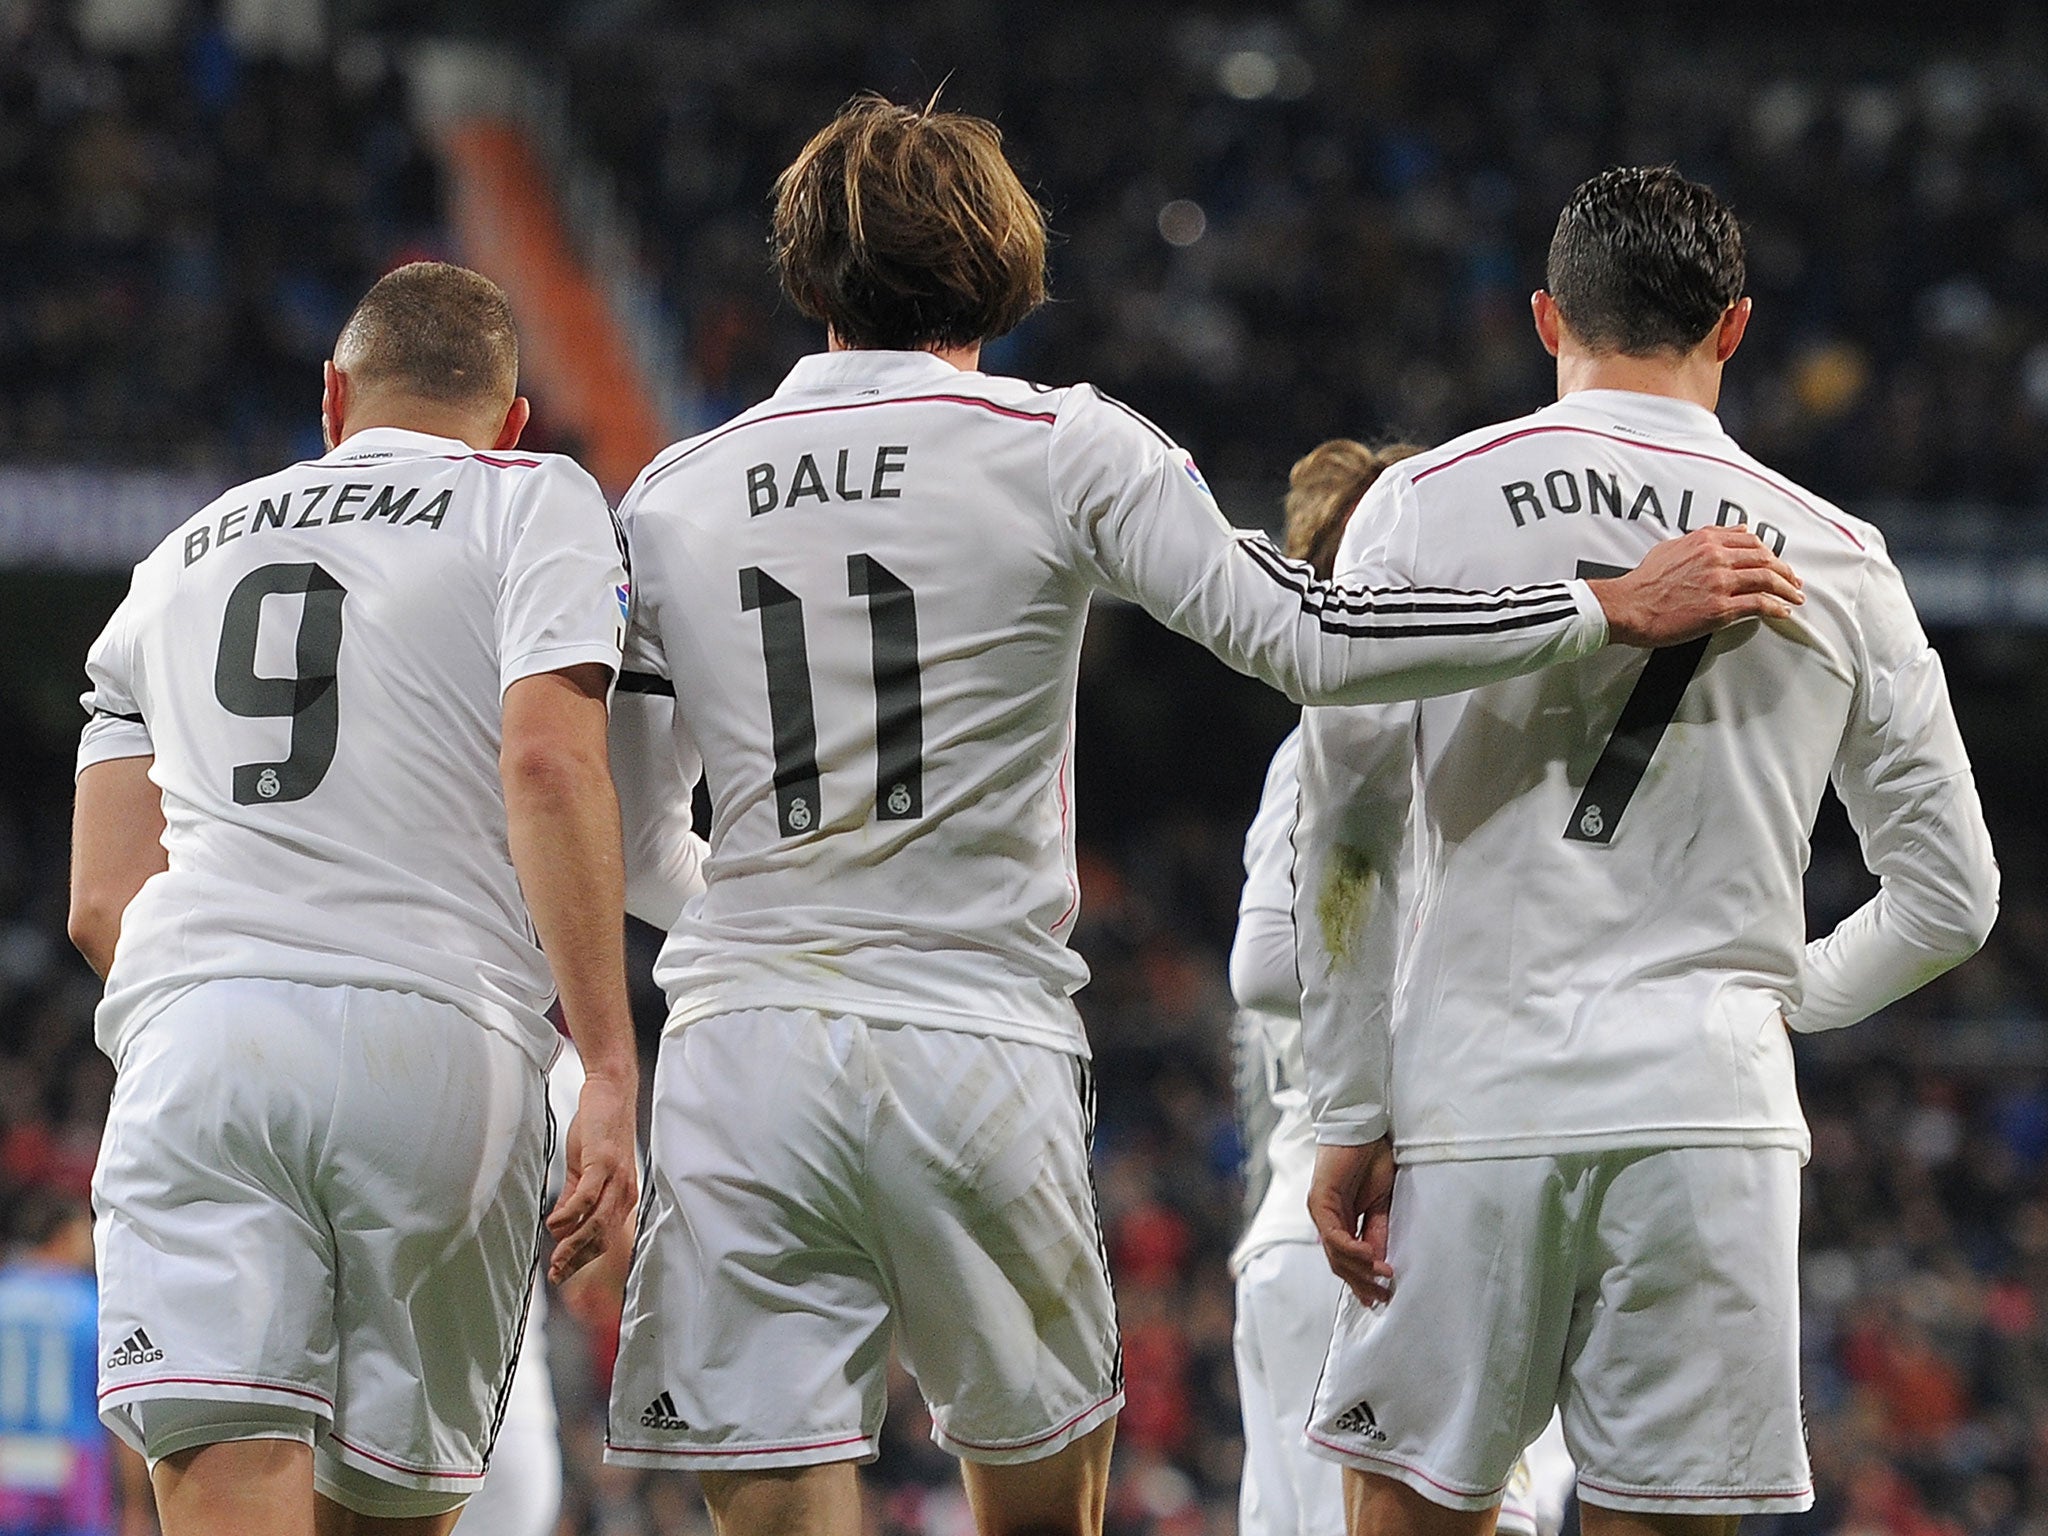 Karim Benzema, Gareth Bale and Cristiano Ronaldo